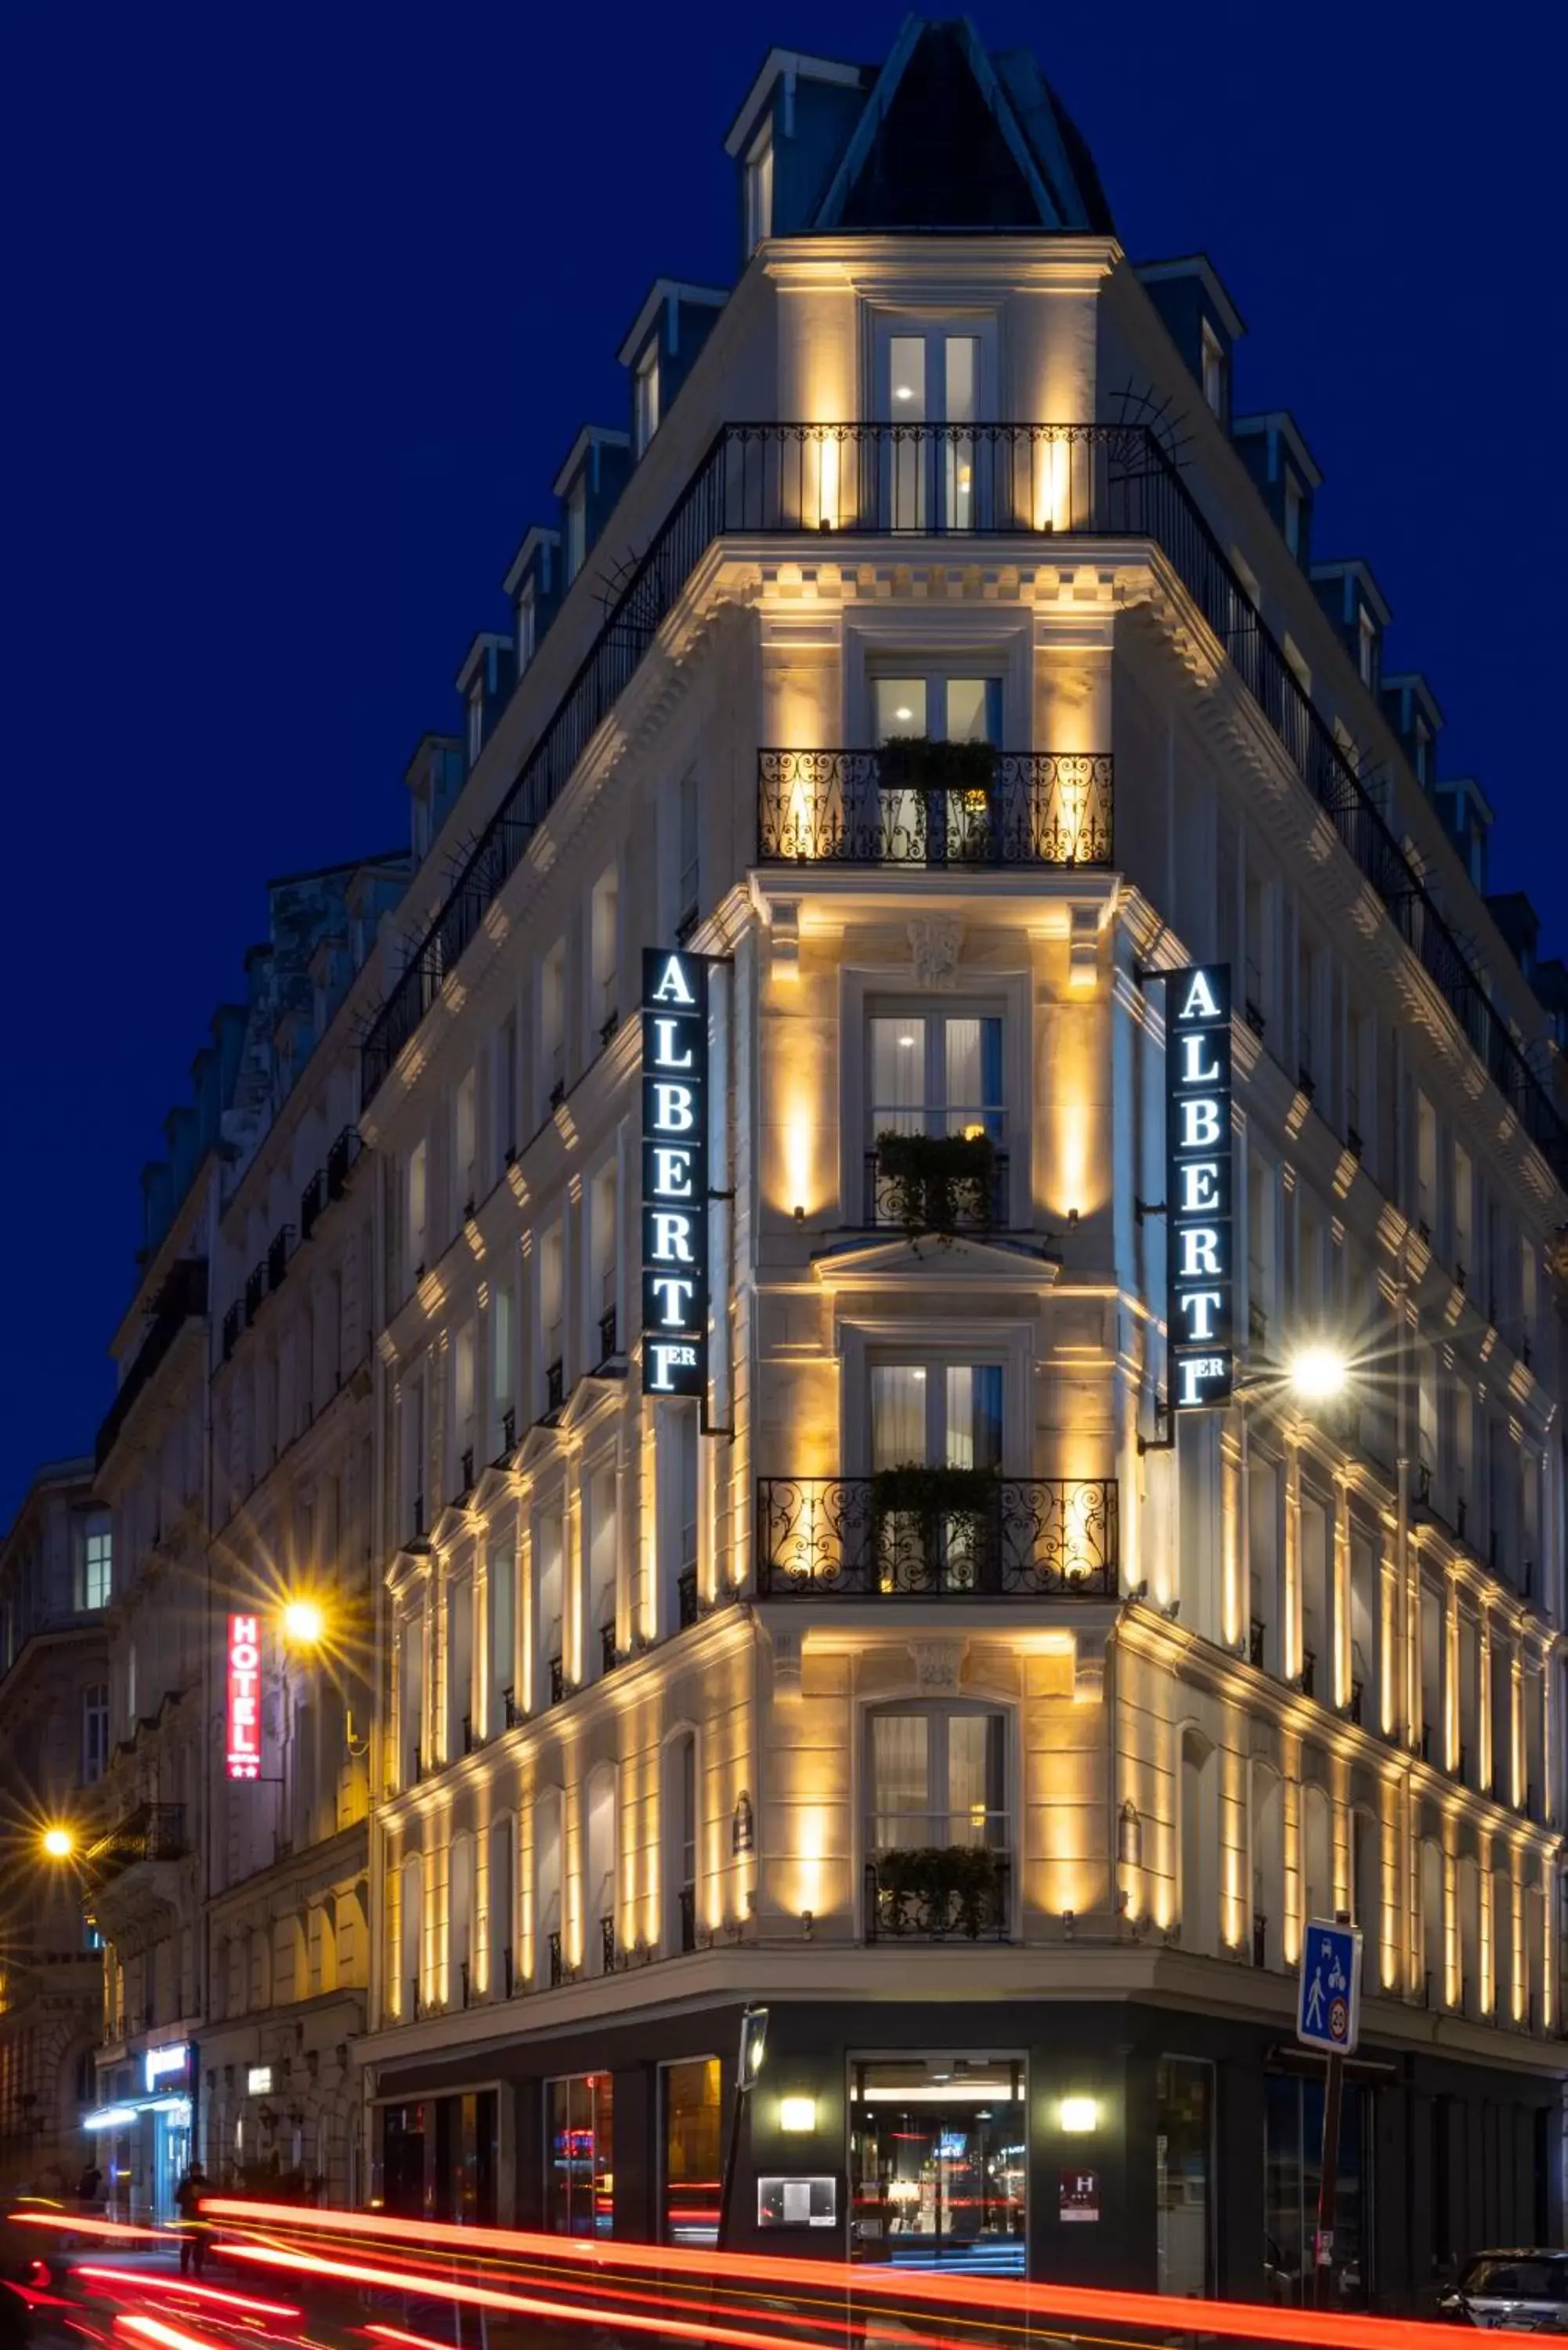 Property Building in Hôtel Albert 1er